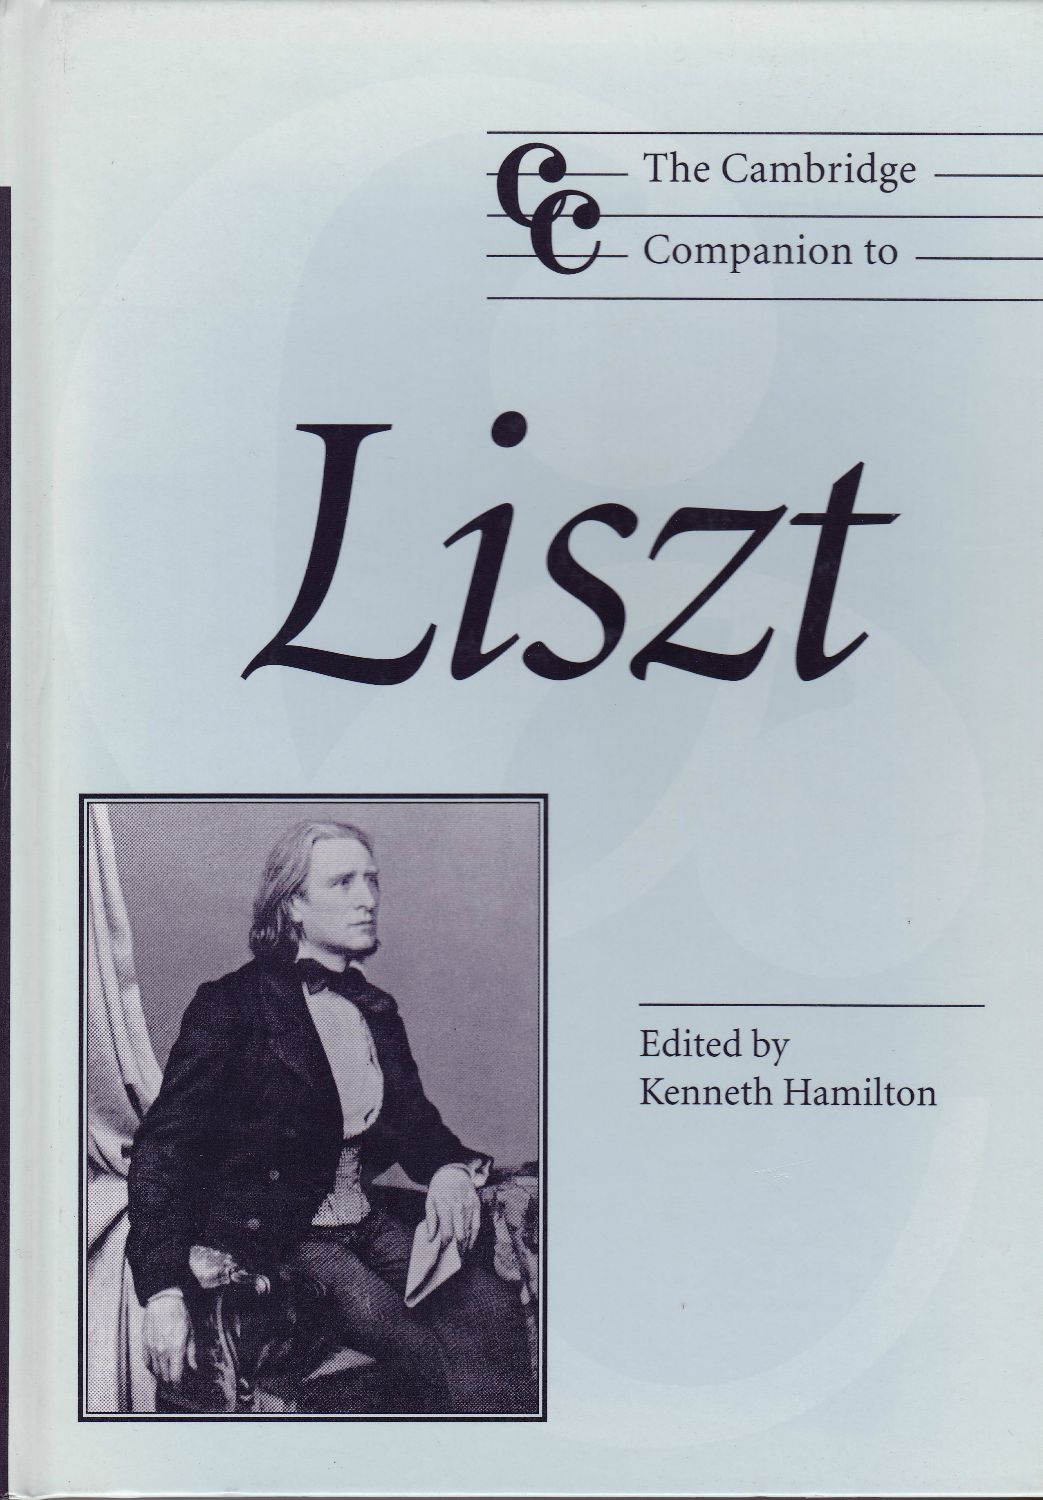 The Cambridge companion to Liszt